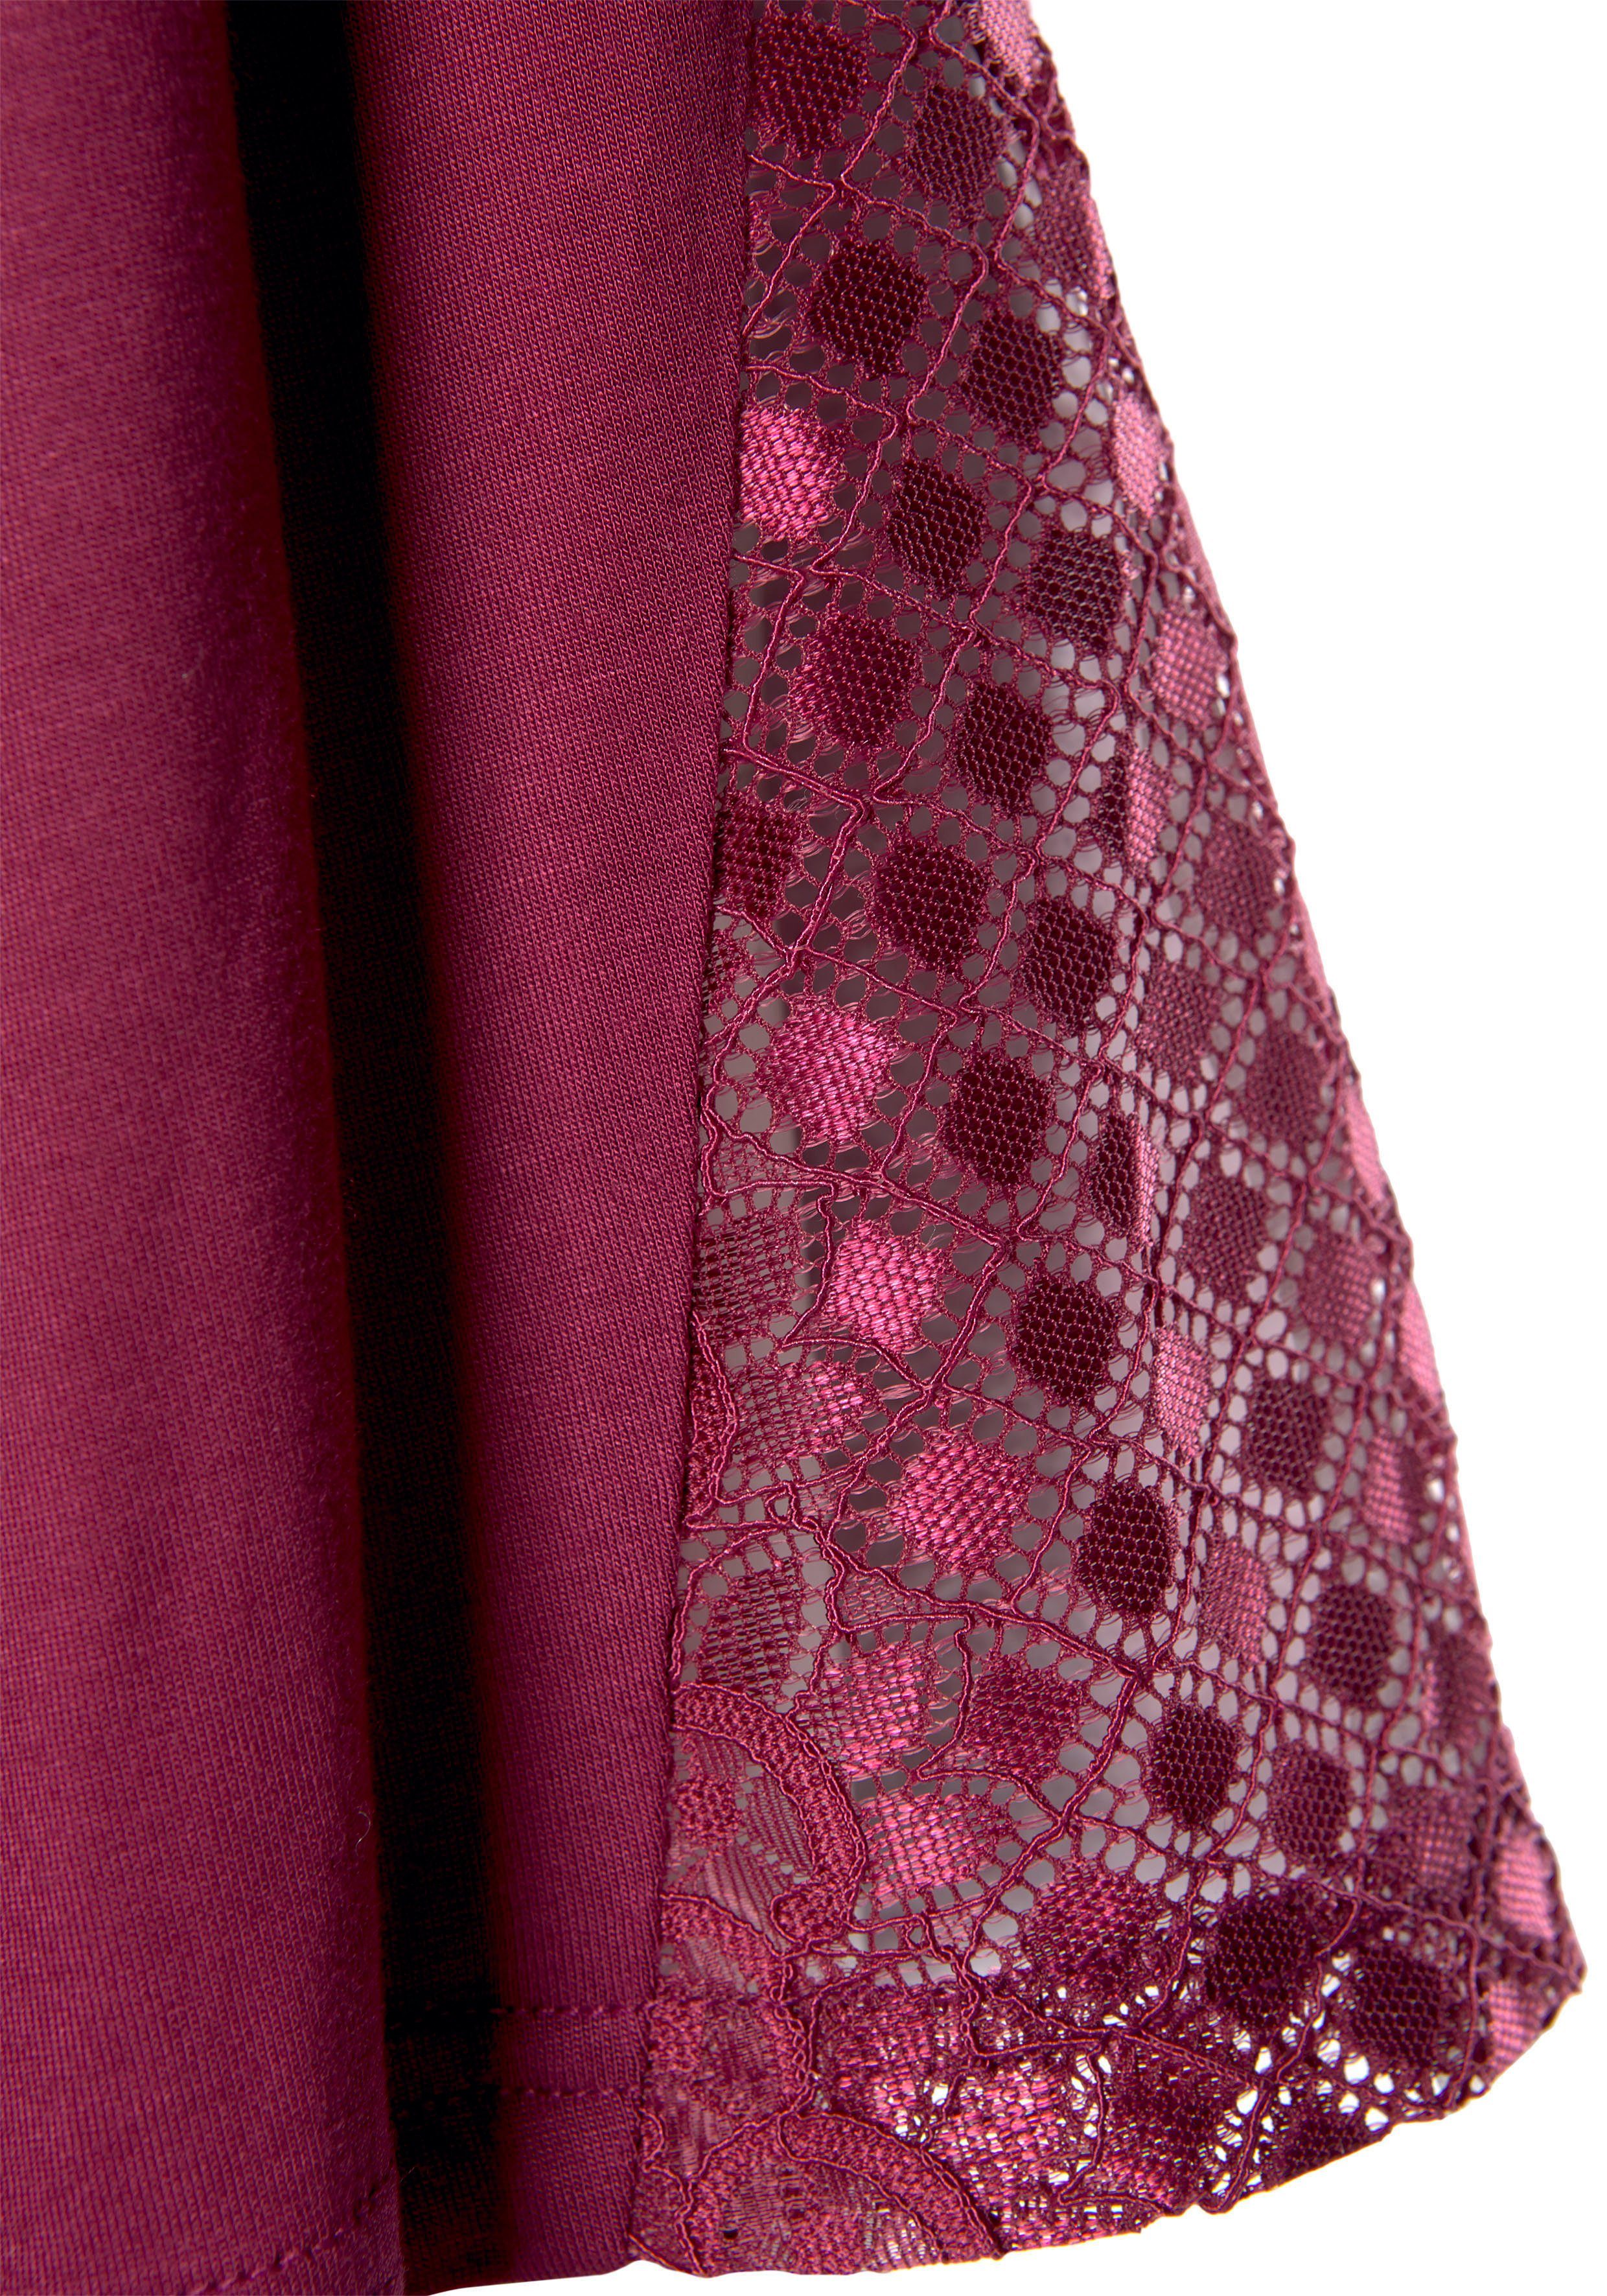 LASCANA Kimono, Spitzen-Details und Viskose, bordeaux Gürtel, Kurzform, mit Ärmeln langen